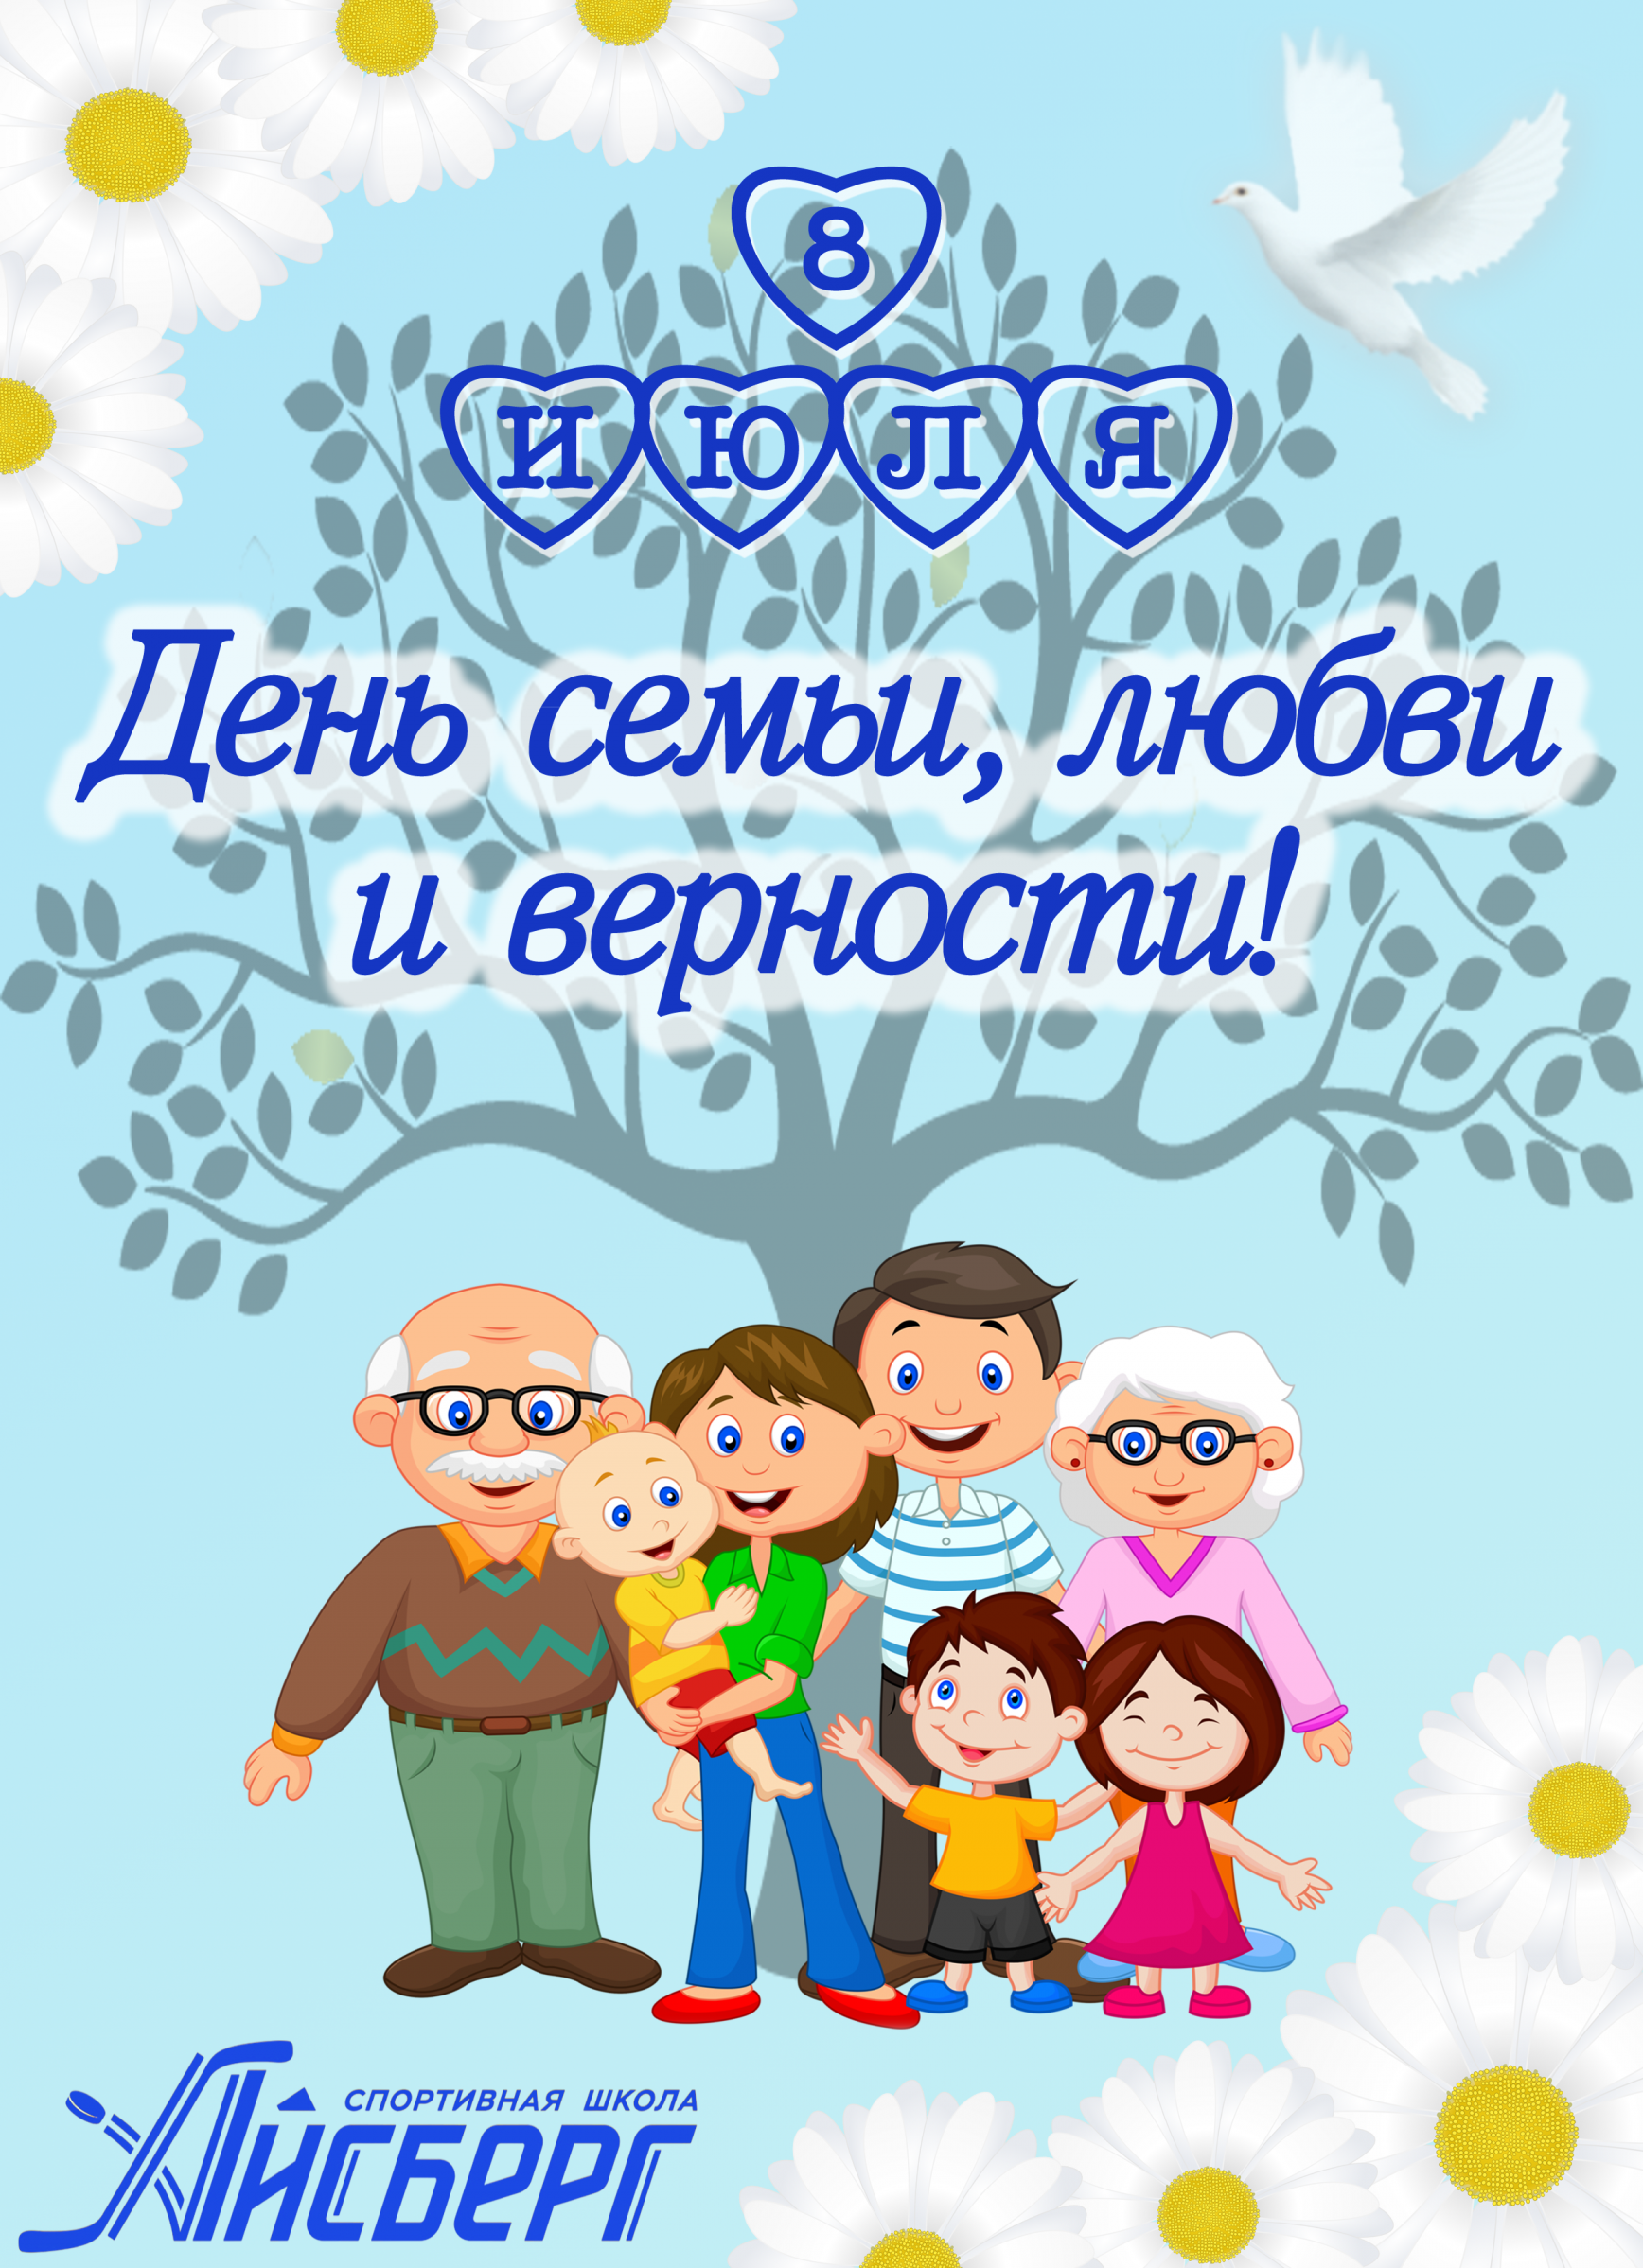 Дорогие друзья, спортивная школа «Айсберг» поздравляет всех с Всероссийским днём семьи, любви и верности!